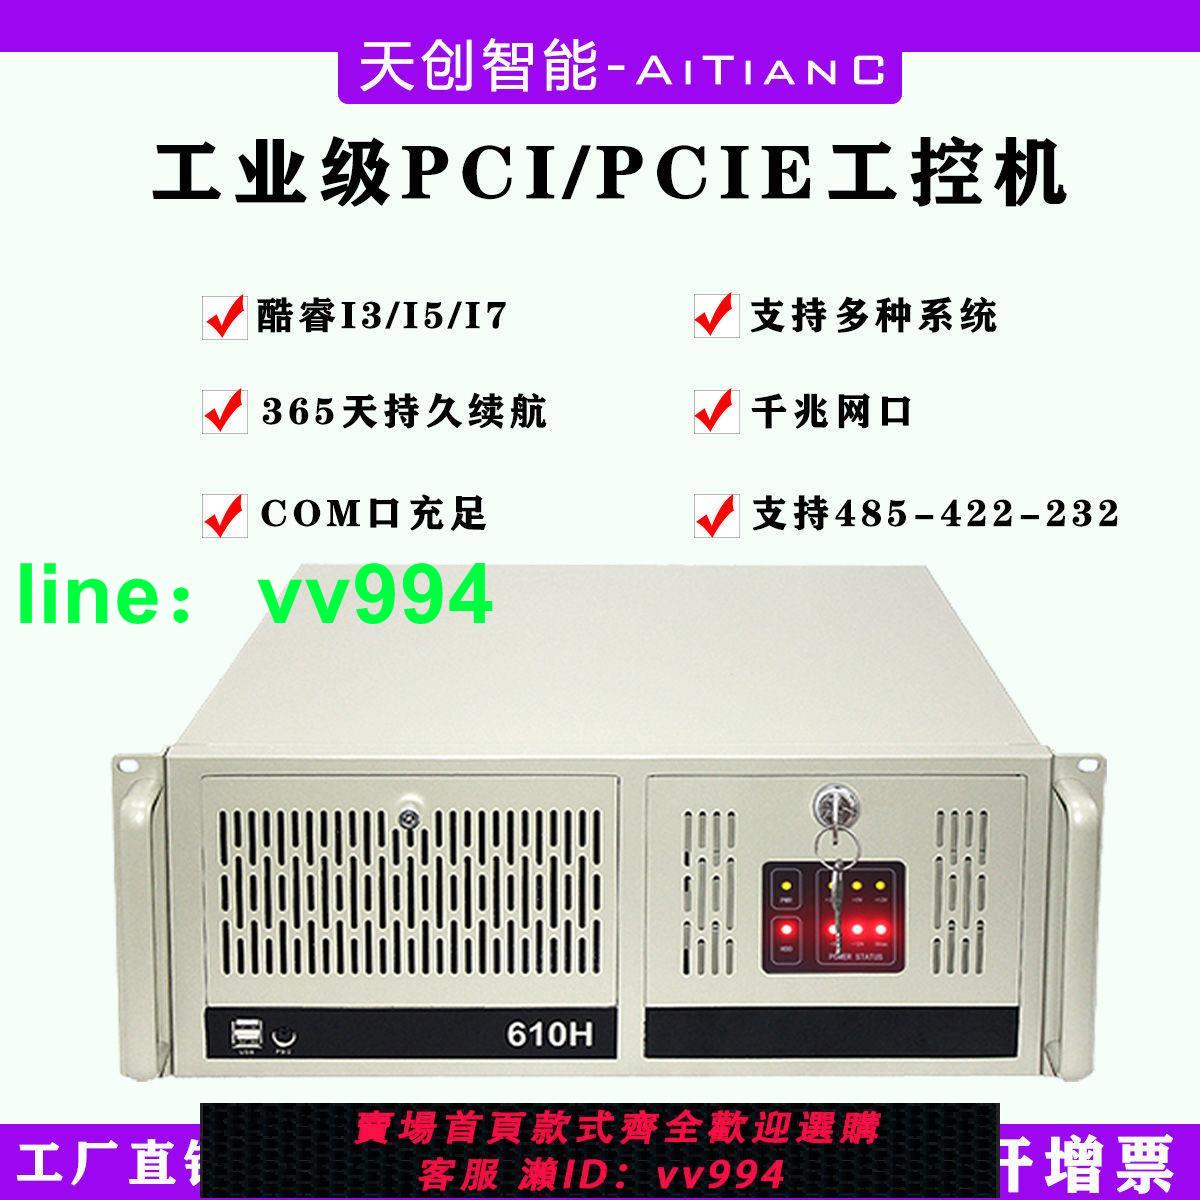 IPC-610H串口工業自動化運動控制視頻采集計算工控機4U服務器電腦